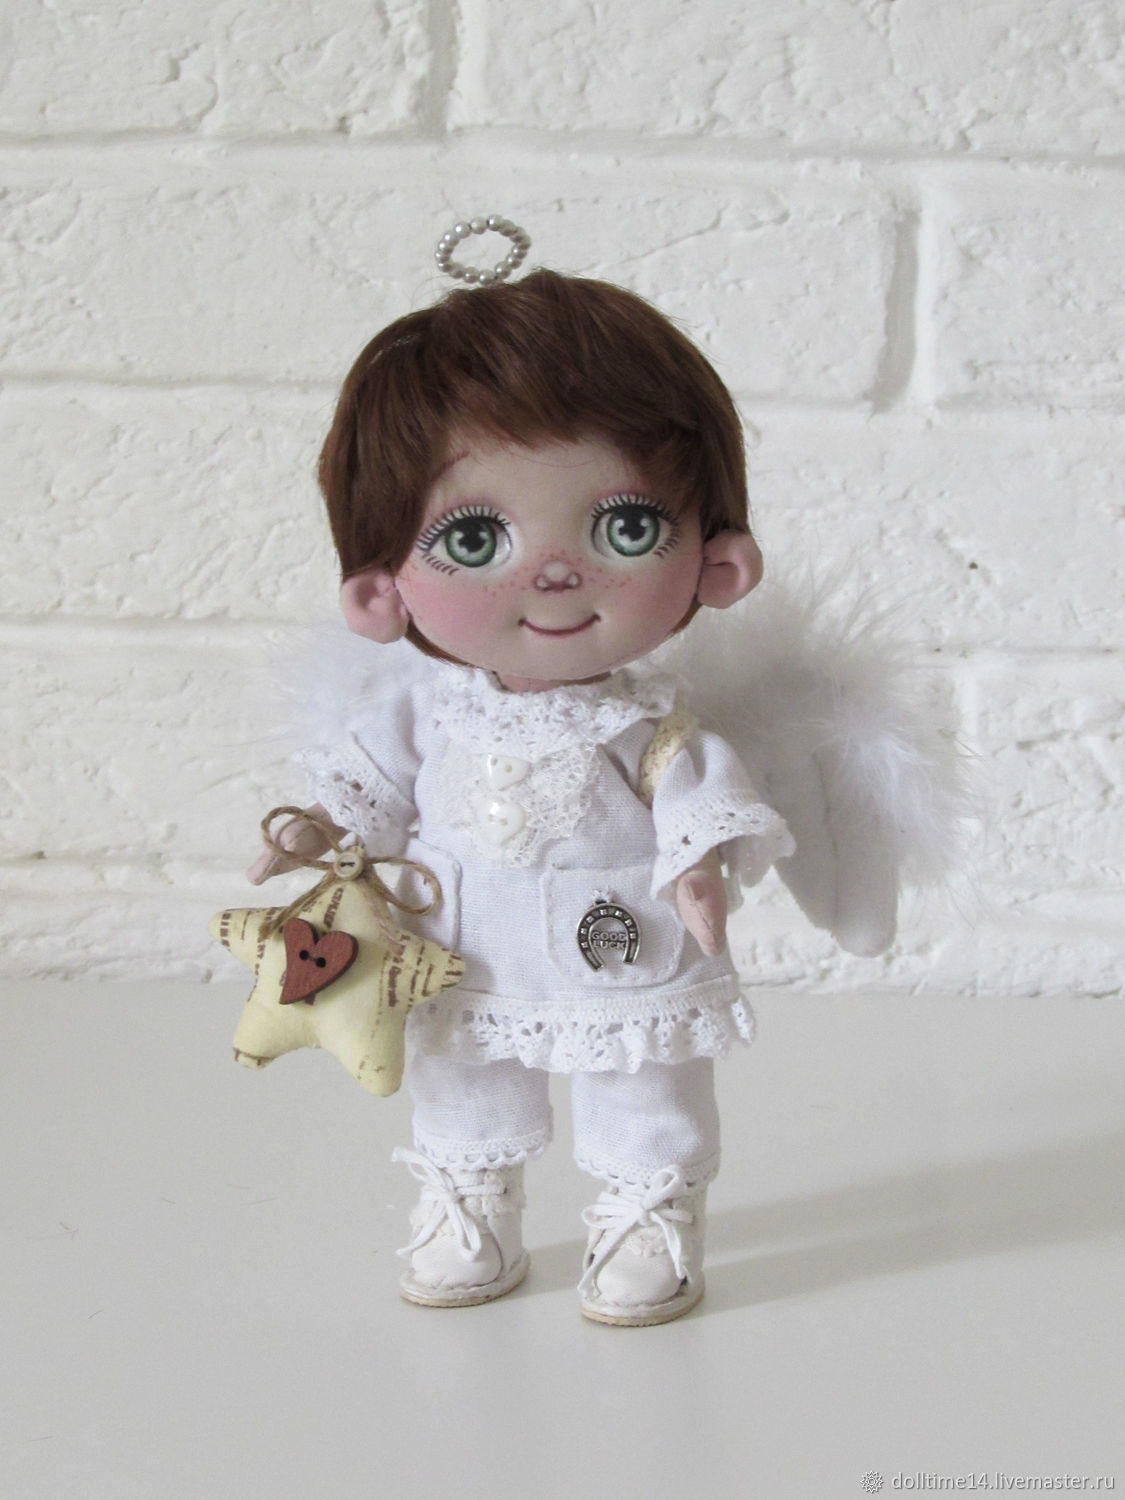  Текстильная кукла Ангел-мечтатель, Куклы и пупсы, Трехгорный,  Фото №1